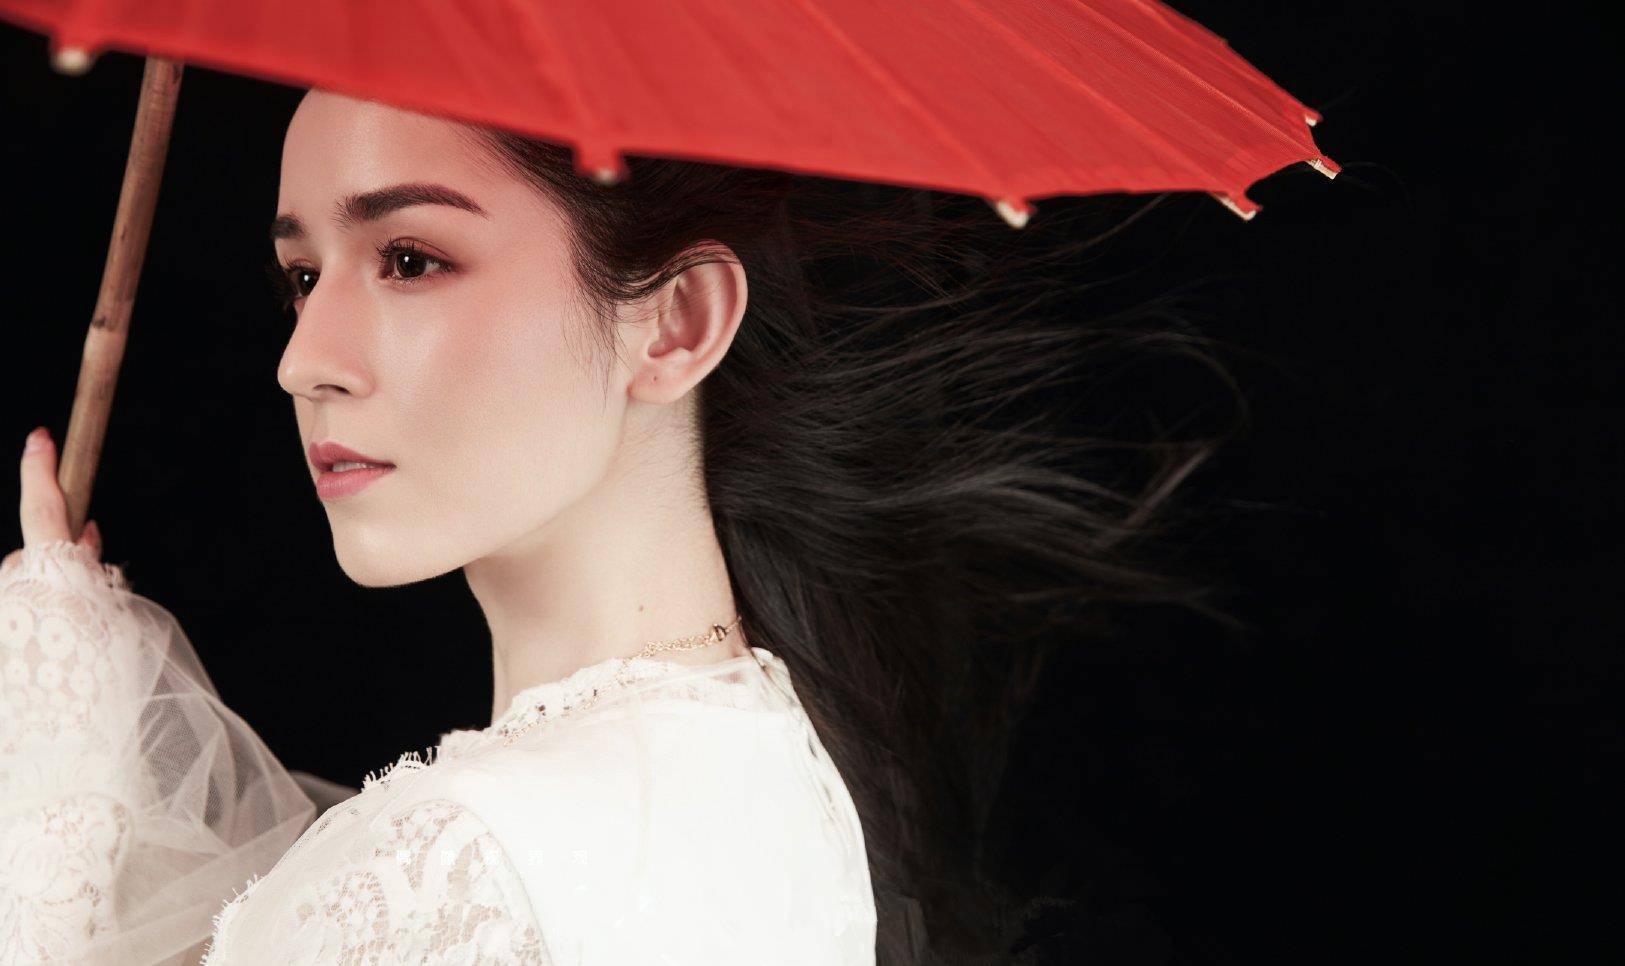 原创"一舞成名"的新疆美女哈妮克孜,穿白裙配长发,气质胜明星